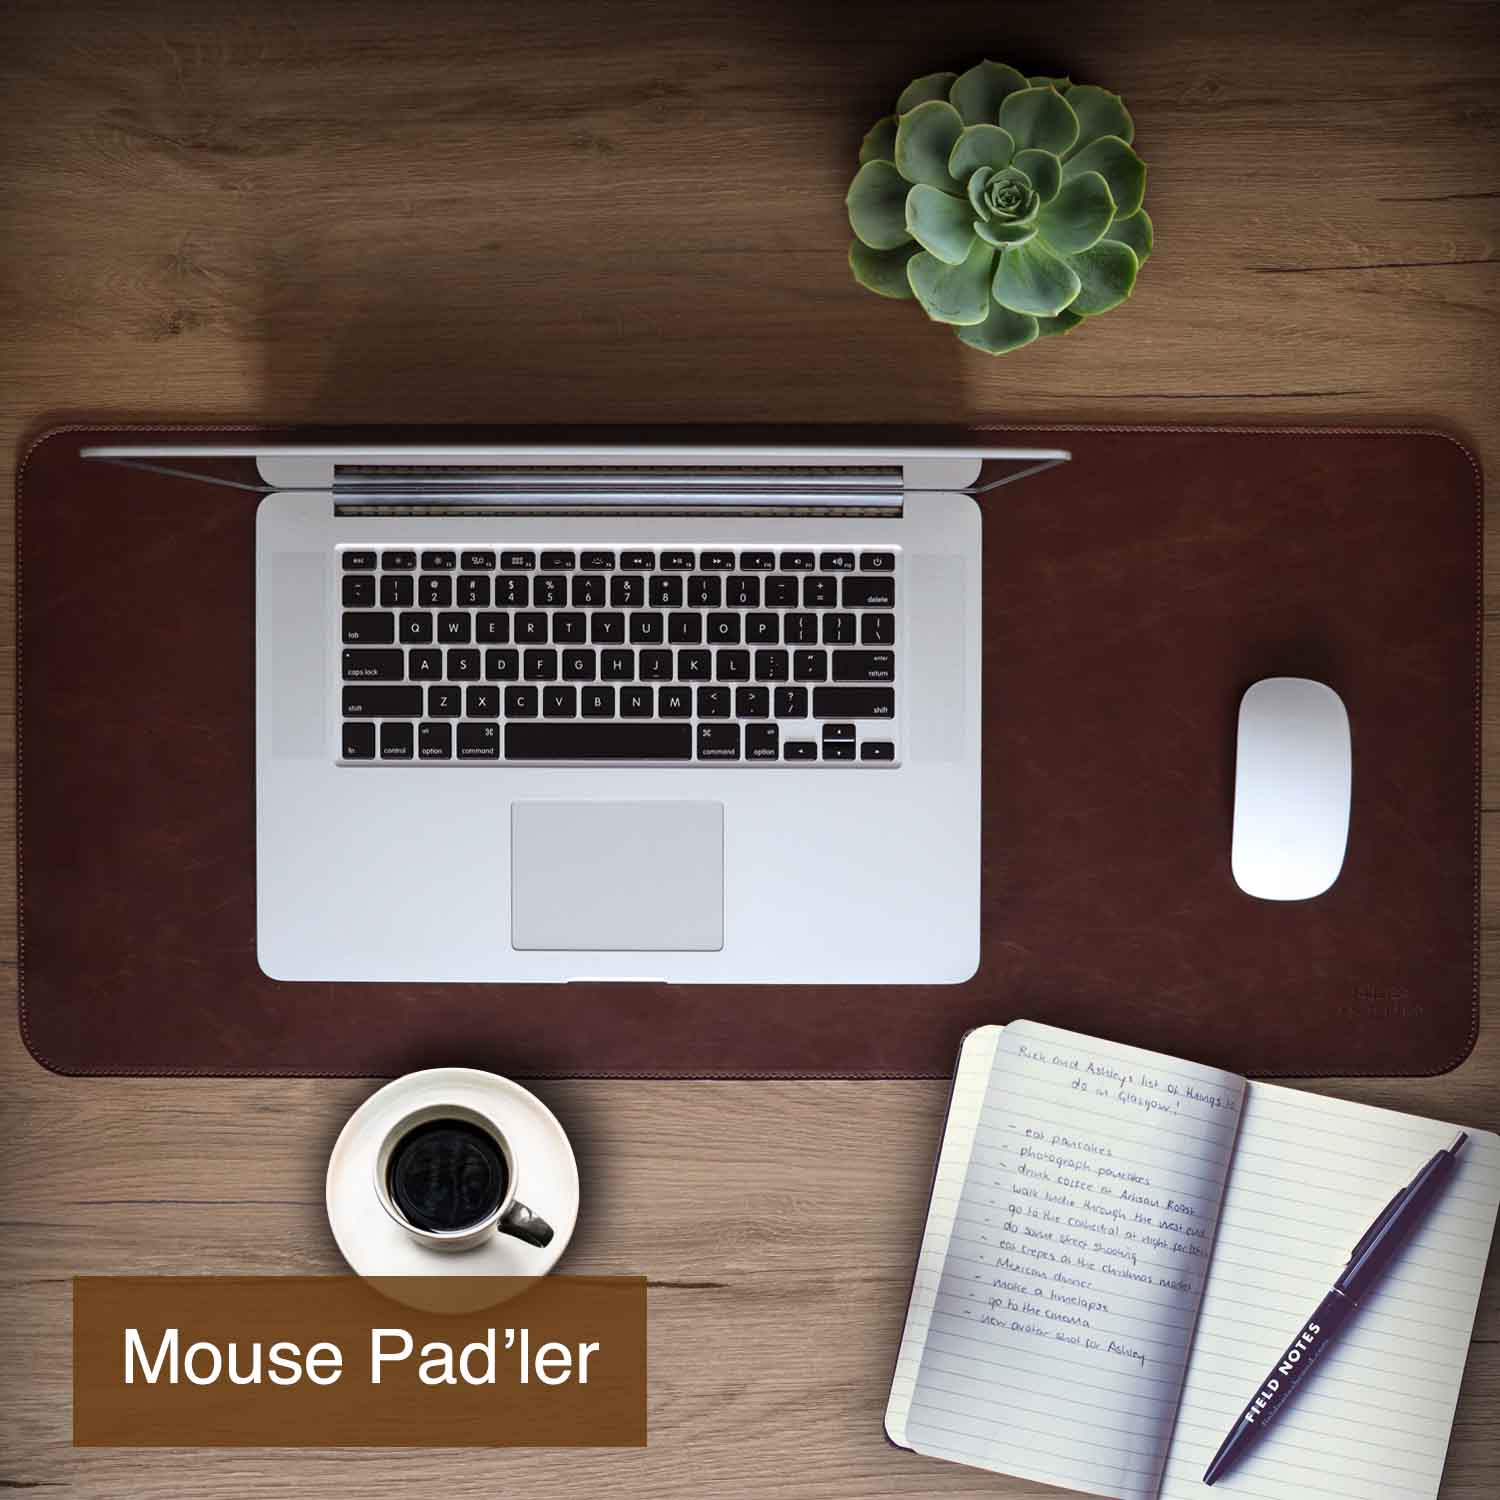 Deri Mouse Padler